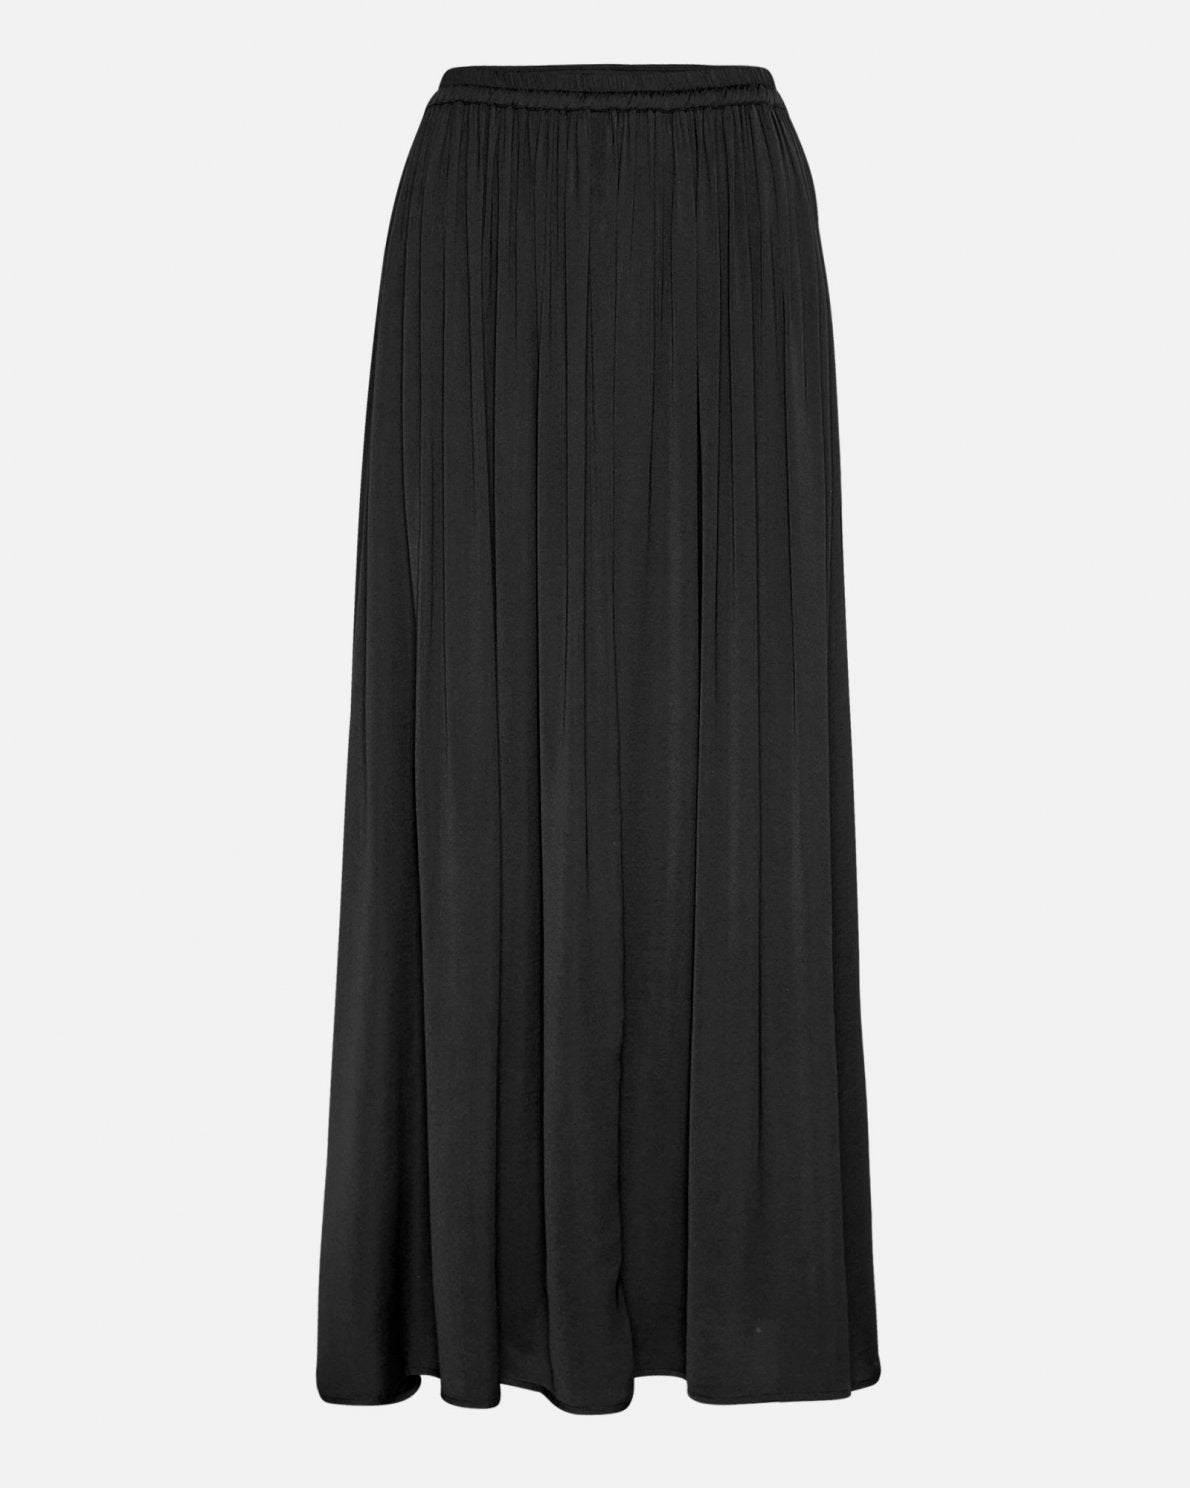 Sanderline Skirt in Black